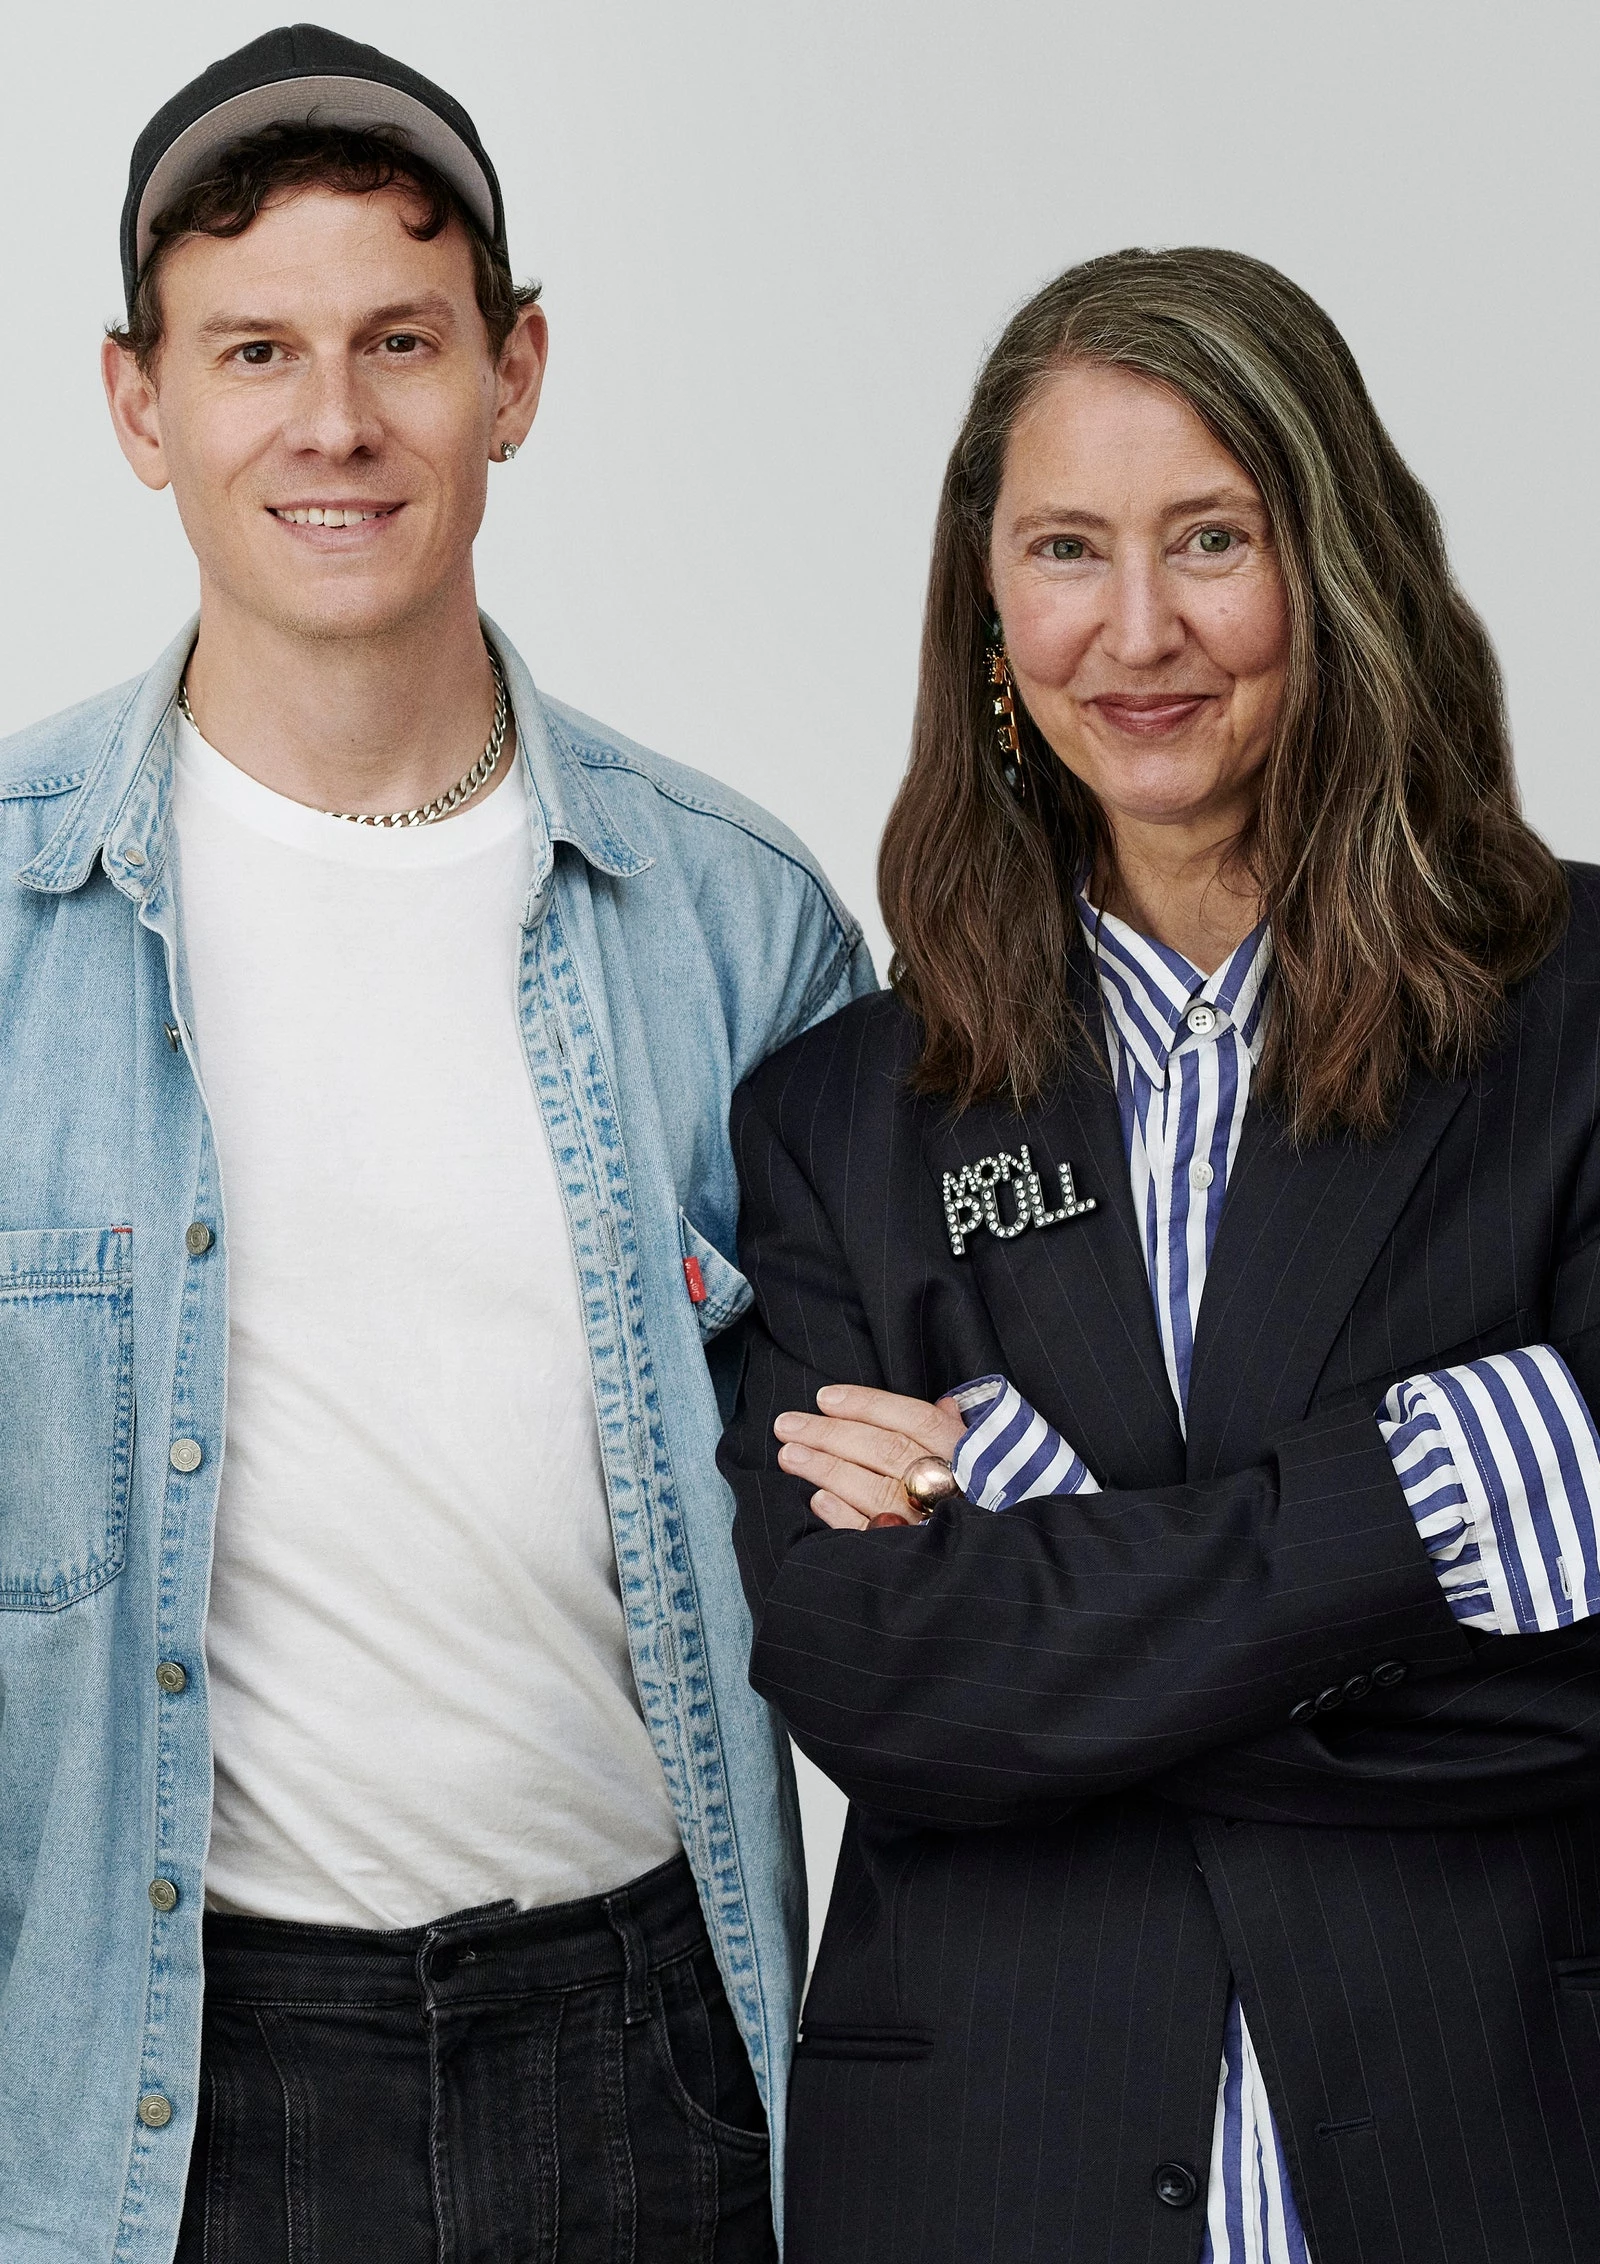 Кейсі Кедвалладер, креативний директор Mugler, разом із креативним консультантом H&M, Енн-Софі Йоханссон.